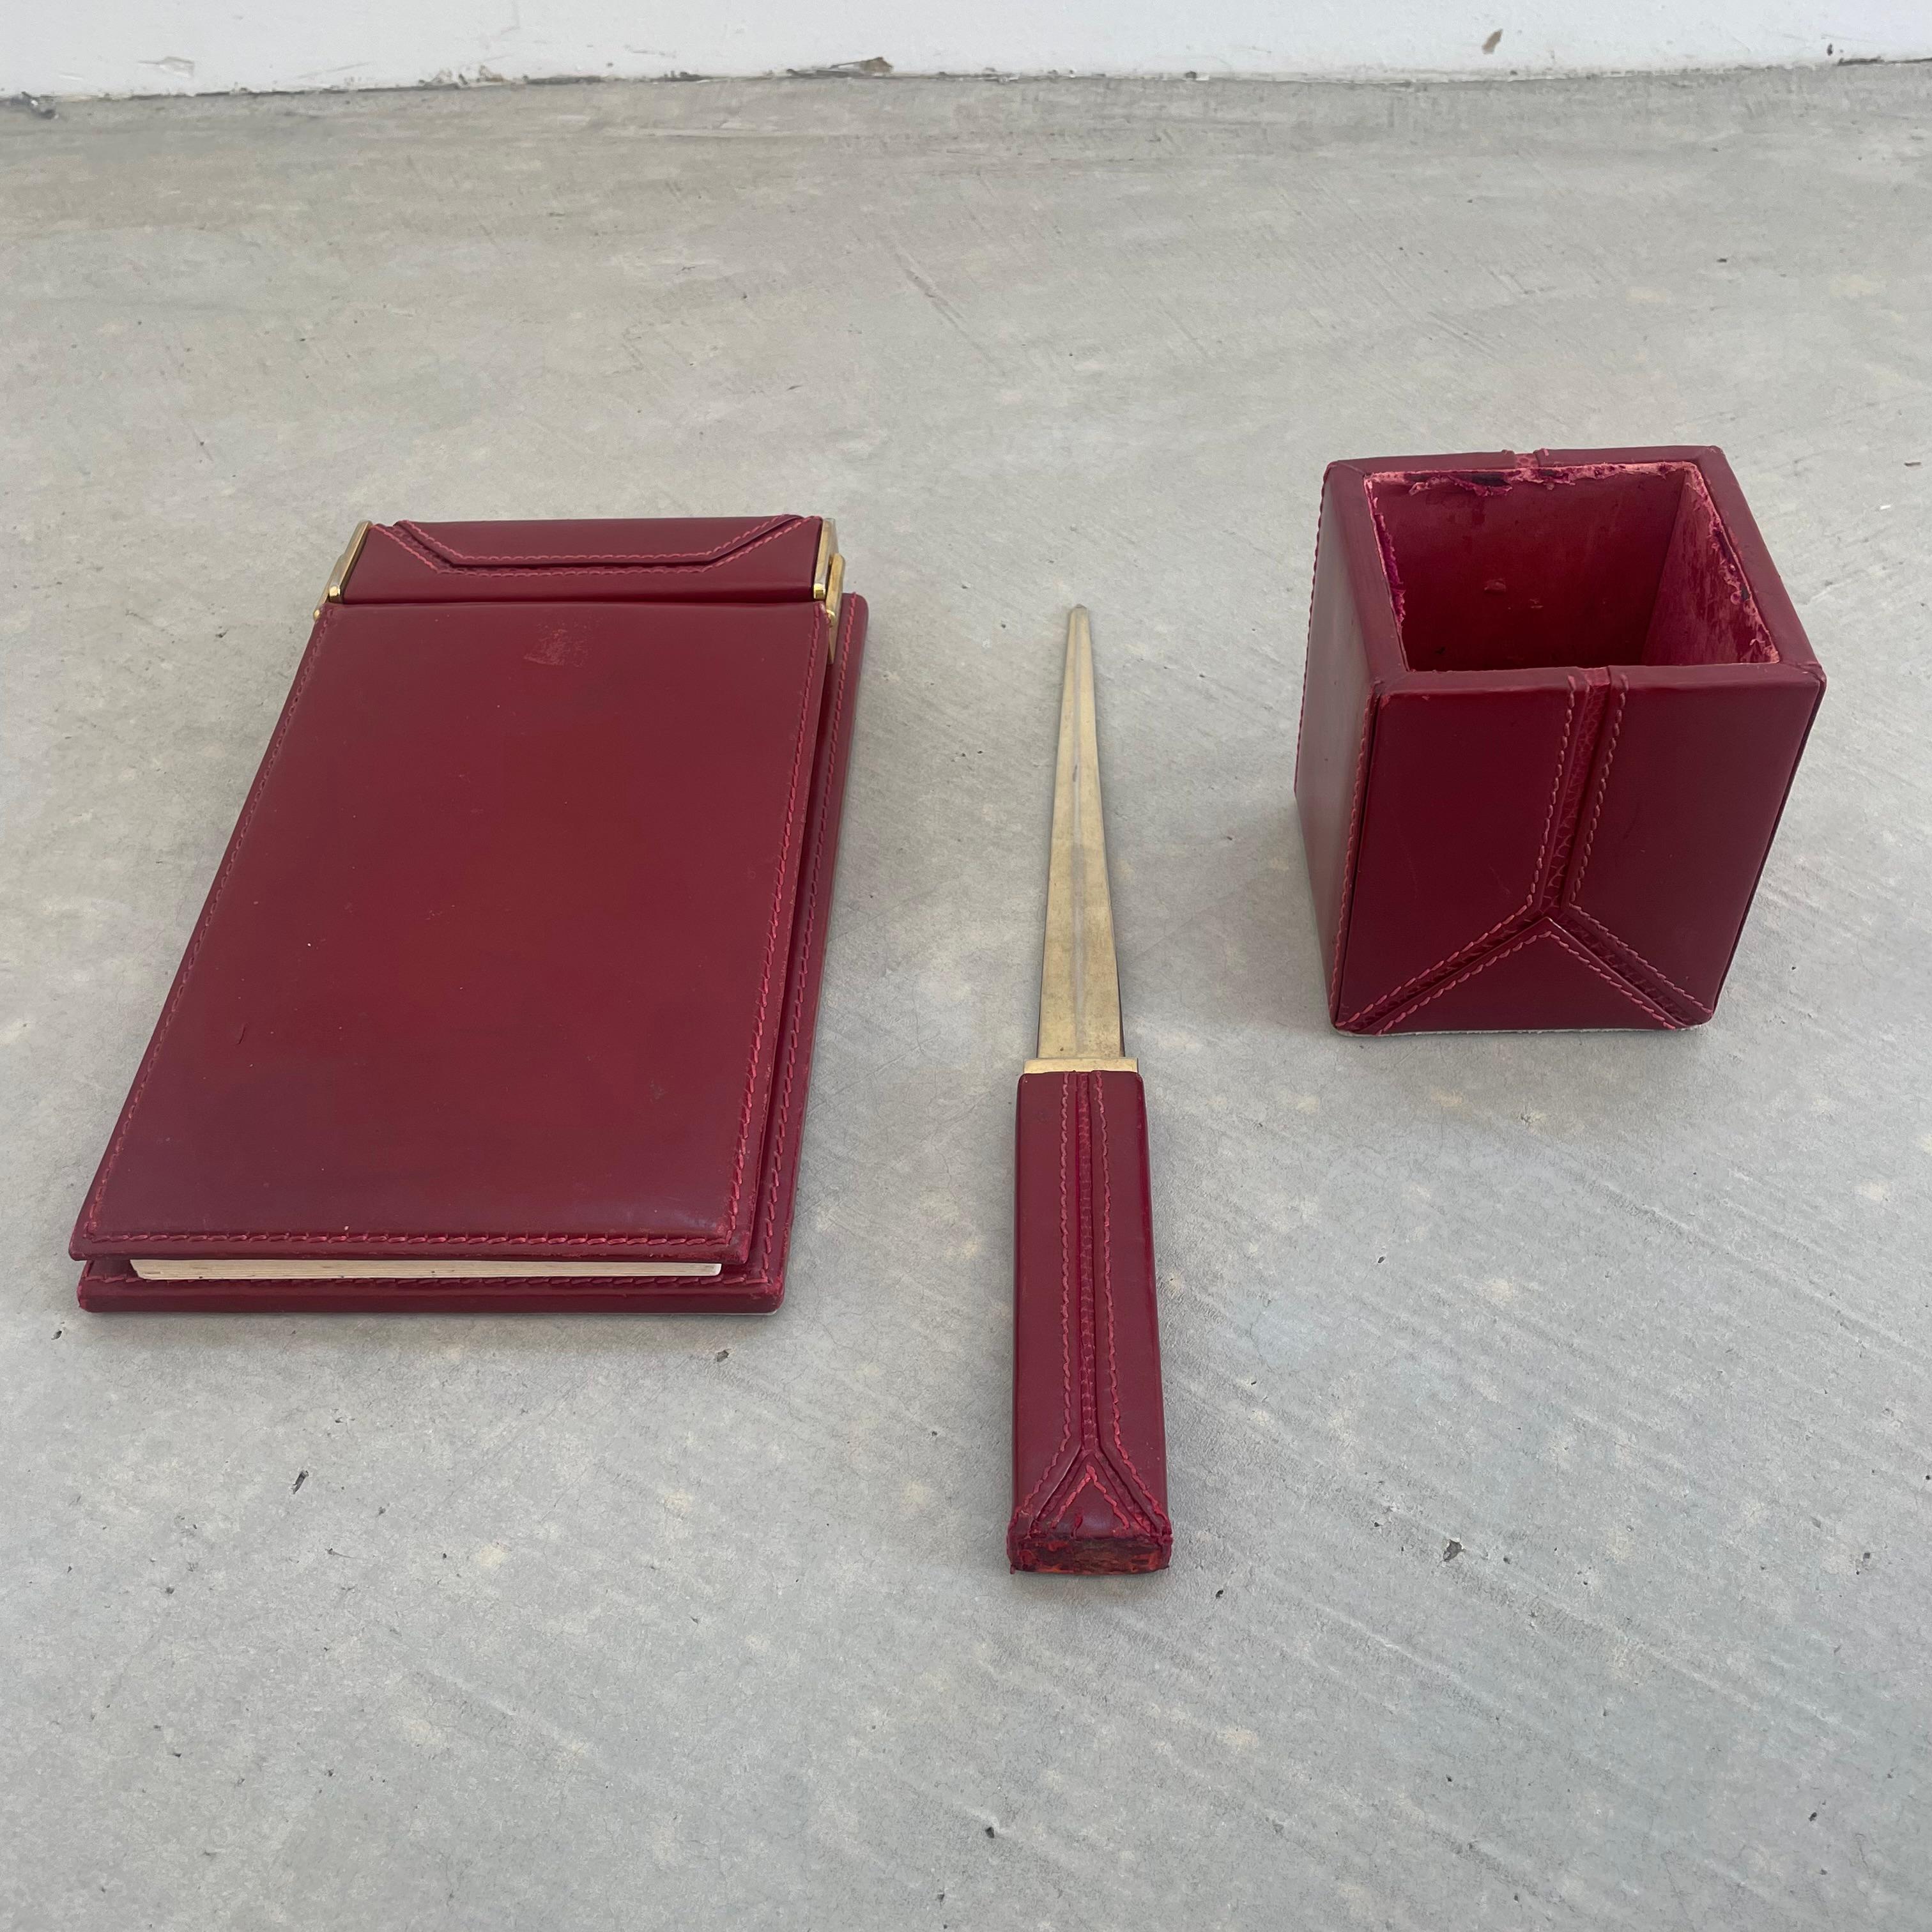 Bellissimo set da scrivania in pelle rossa di Gucci. Realizzato in Italia, circa anni '80. Il set è composto da un pad con carta, un portapenne e un tagliacarte. Il colore della pelle è ricco, con la pelle di lucertola che contrasta con la pelle e